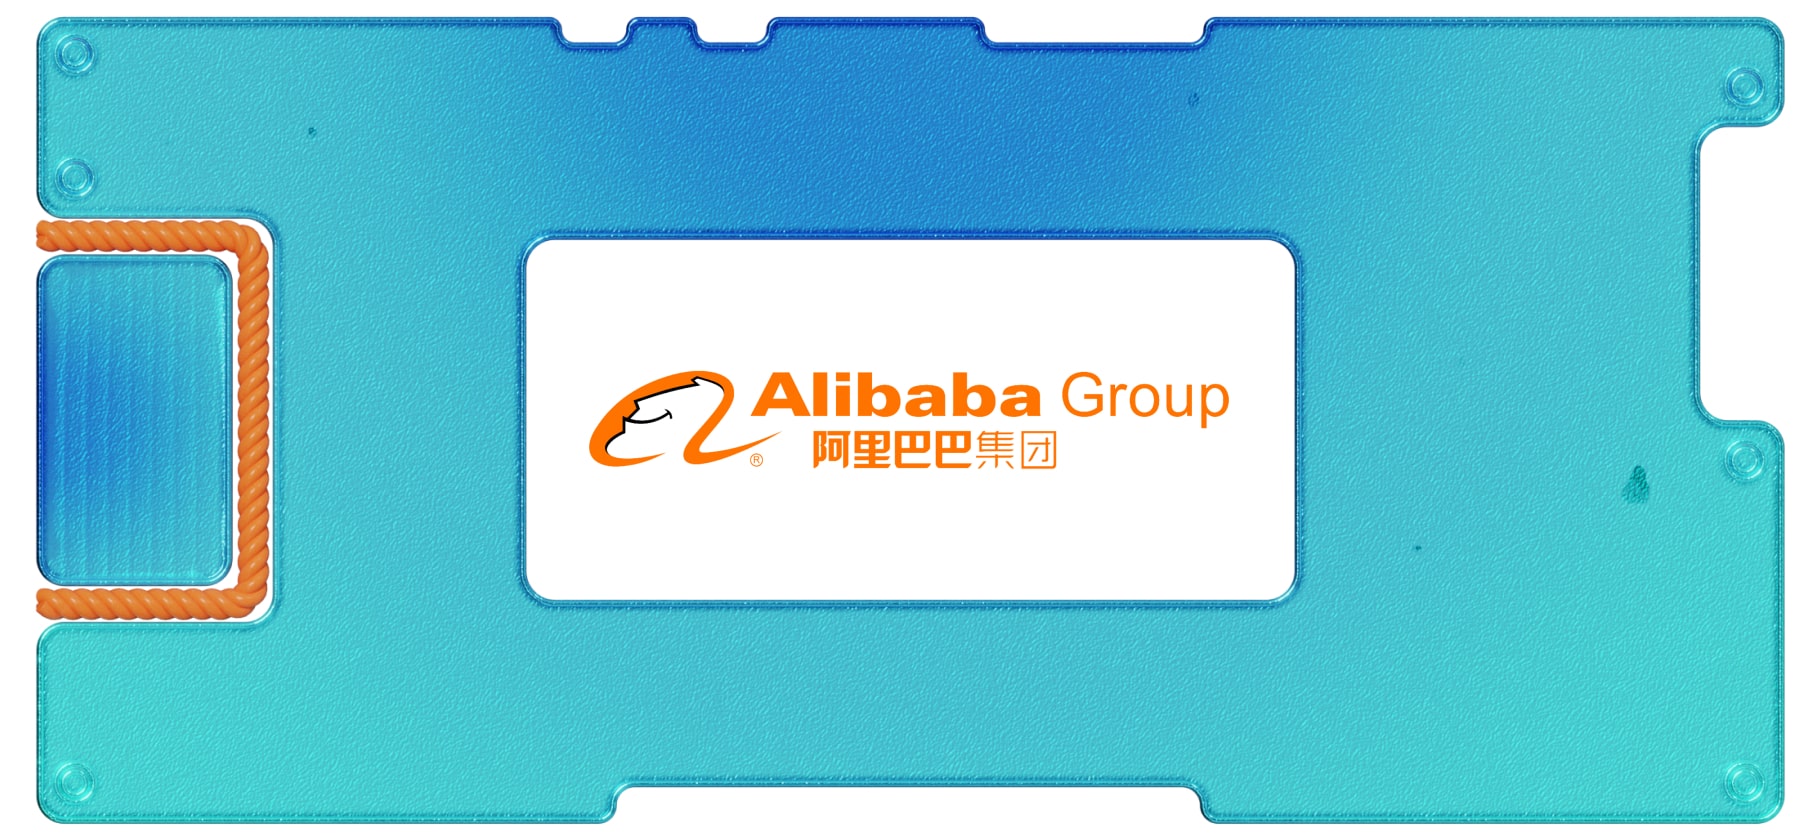 Обзор Alibaba: разбираемся в ситуации с компанией